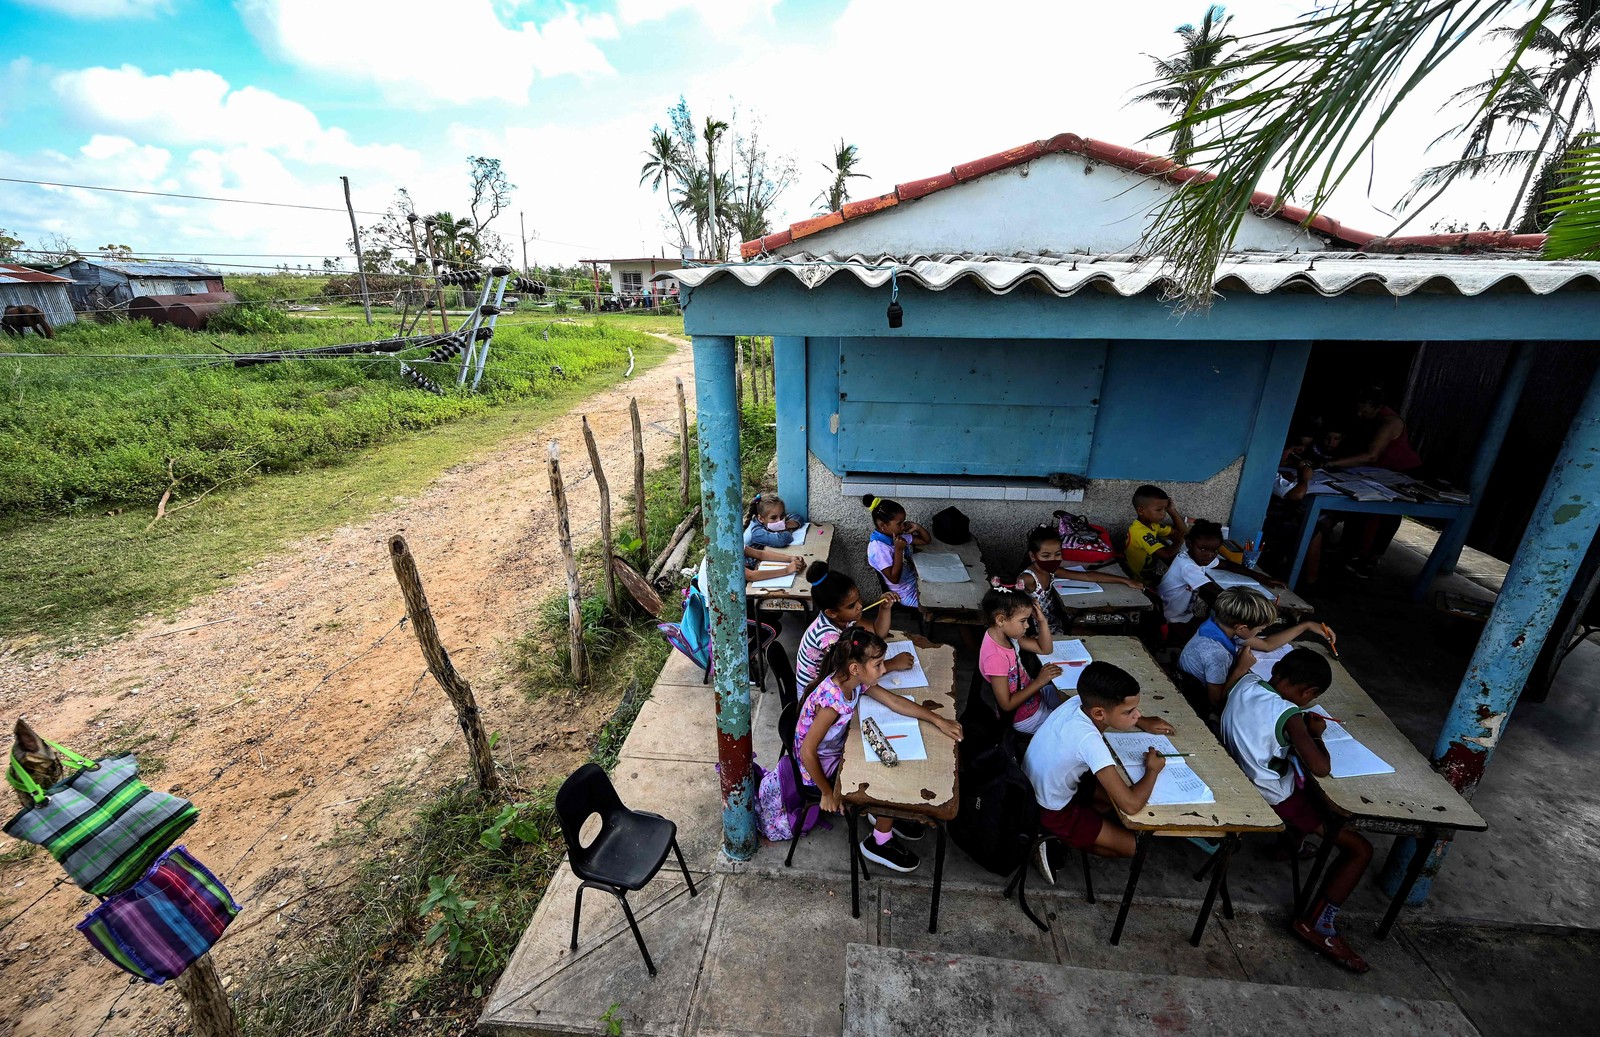 Alunos assistem a uma aula na porta de uma casa em La Coloma, província de Pinar del Rio, Cuba. — Foto: YAMIL LAGE / AFP